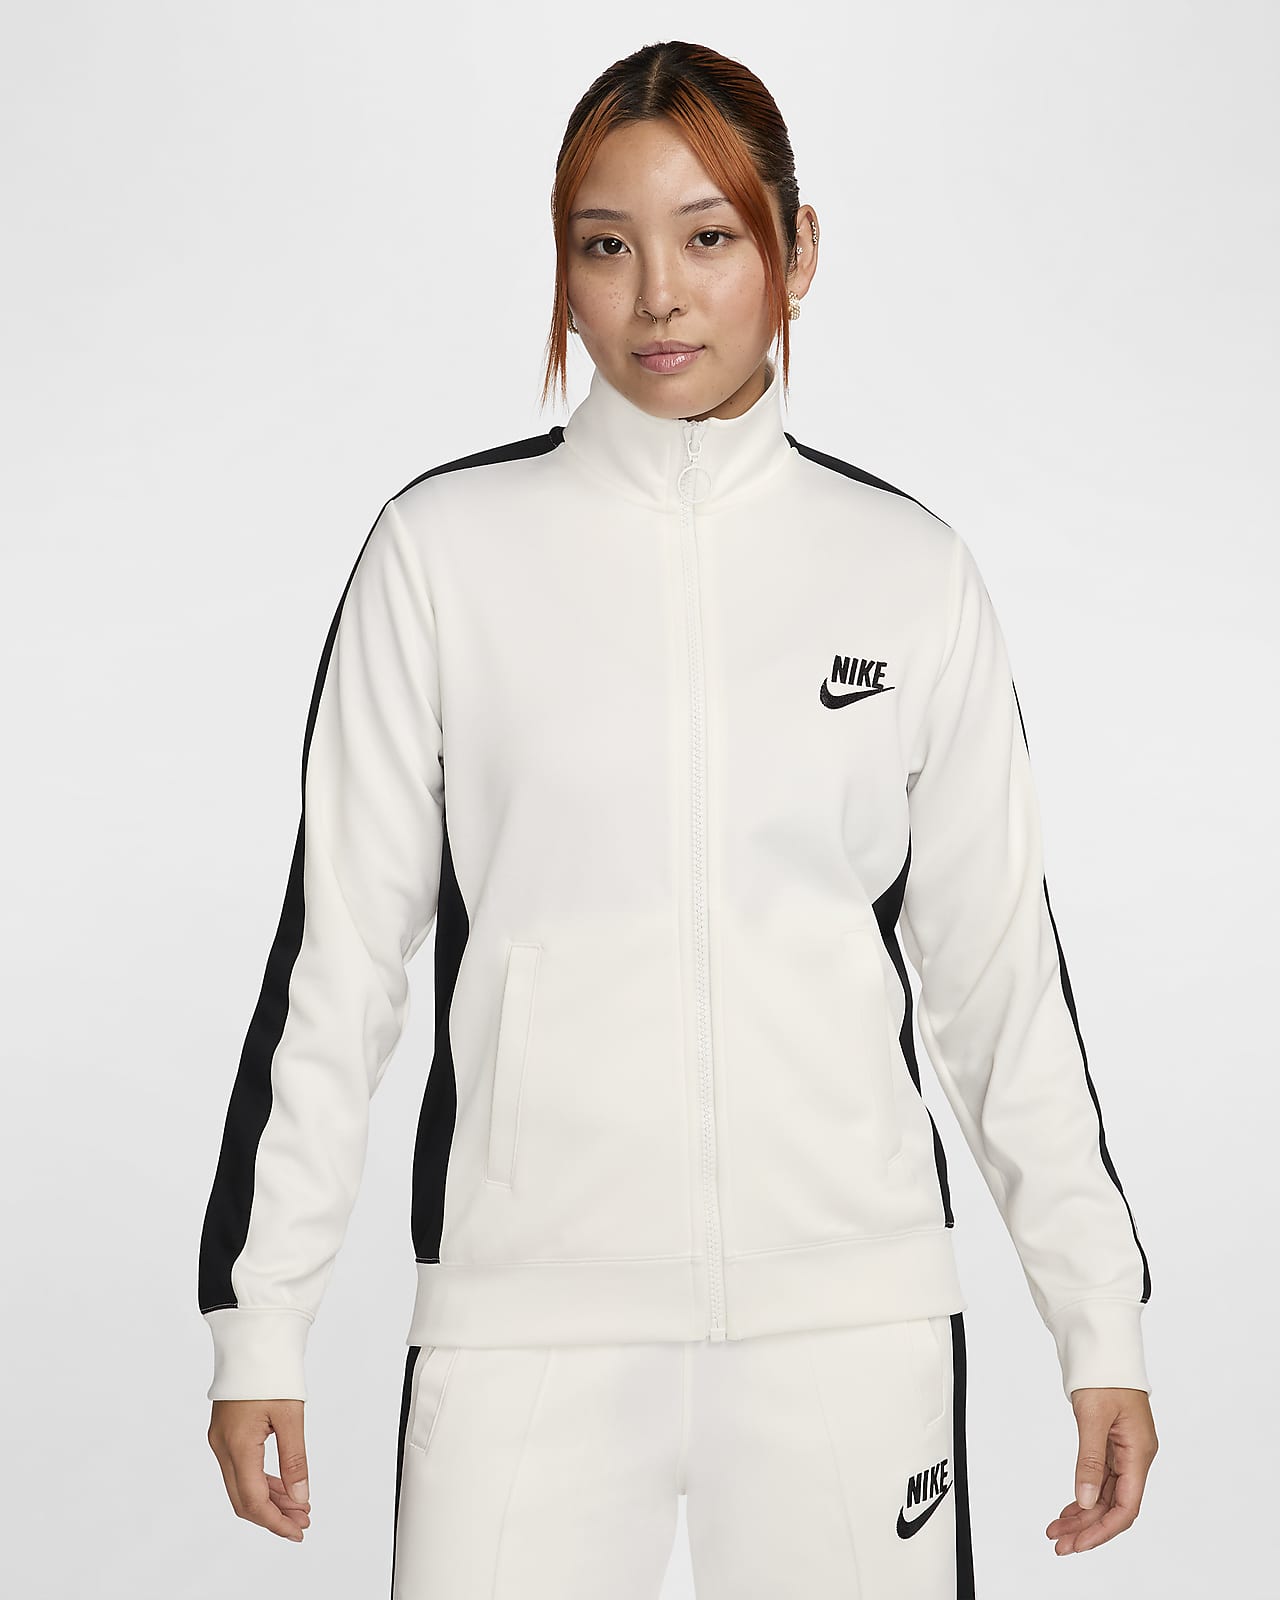 Womens Sportswear Clothing. Nike JP